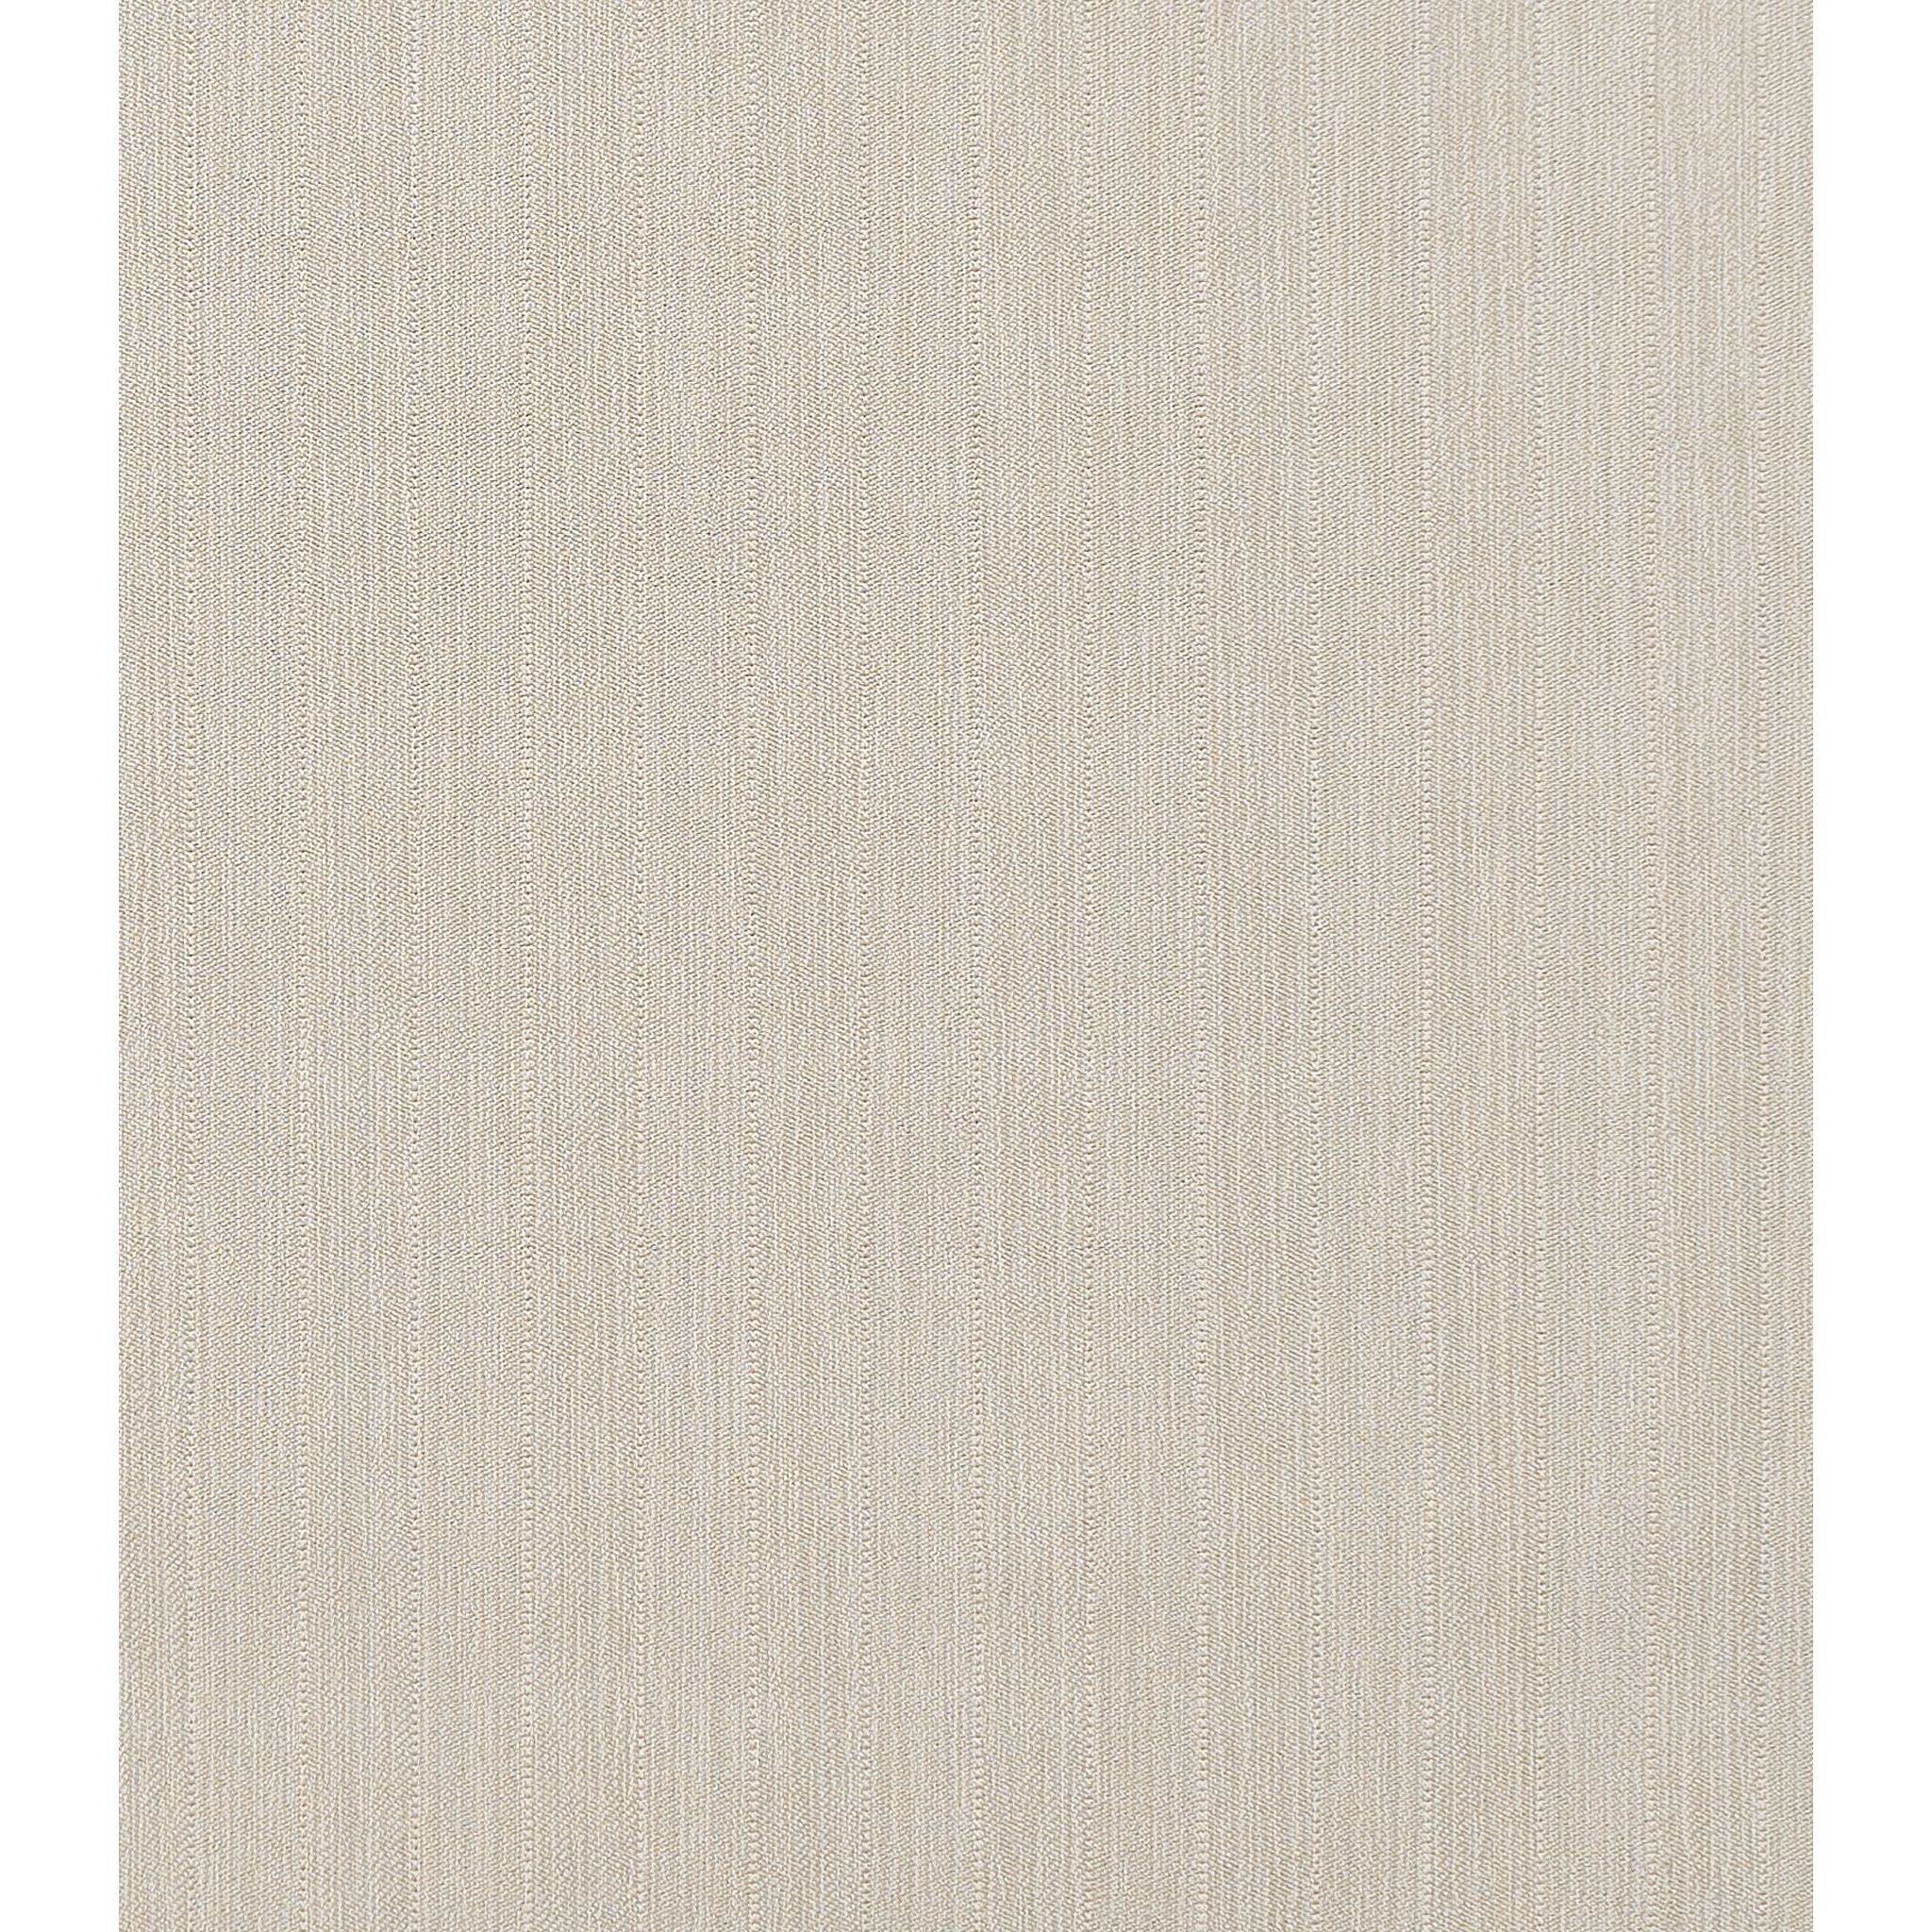 Treemont Stria Wilton Carpet, Lichen Default Title